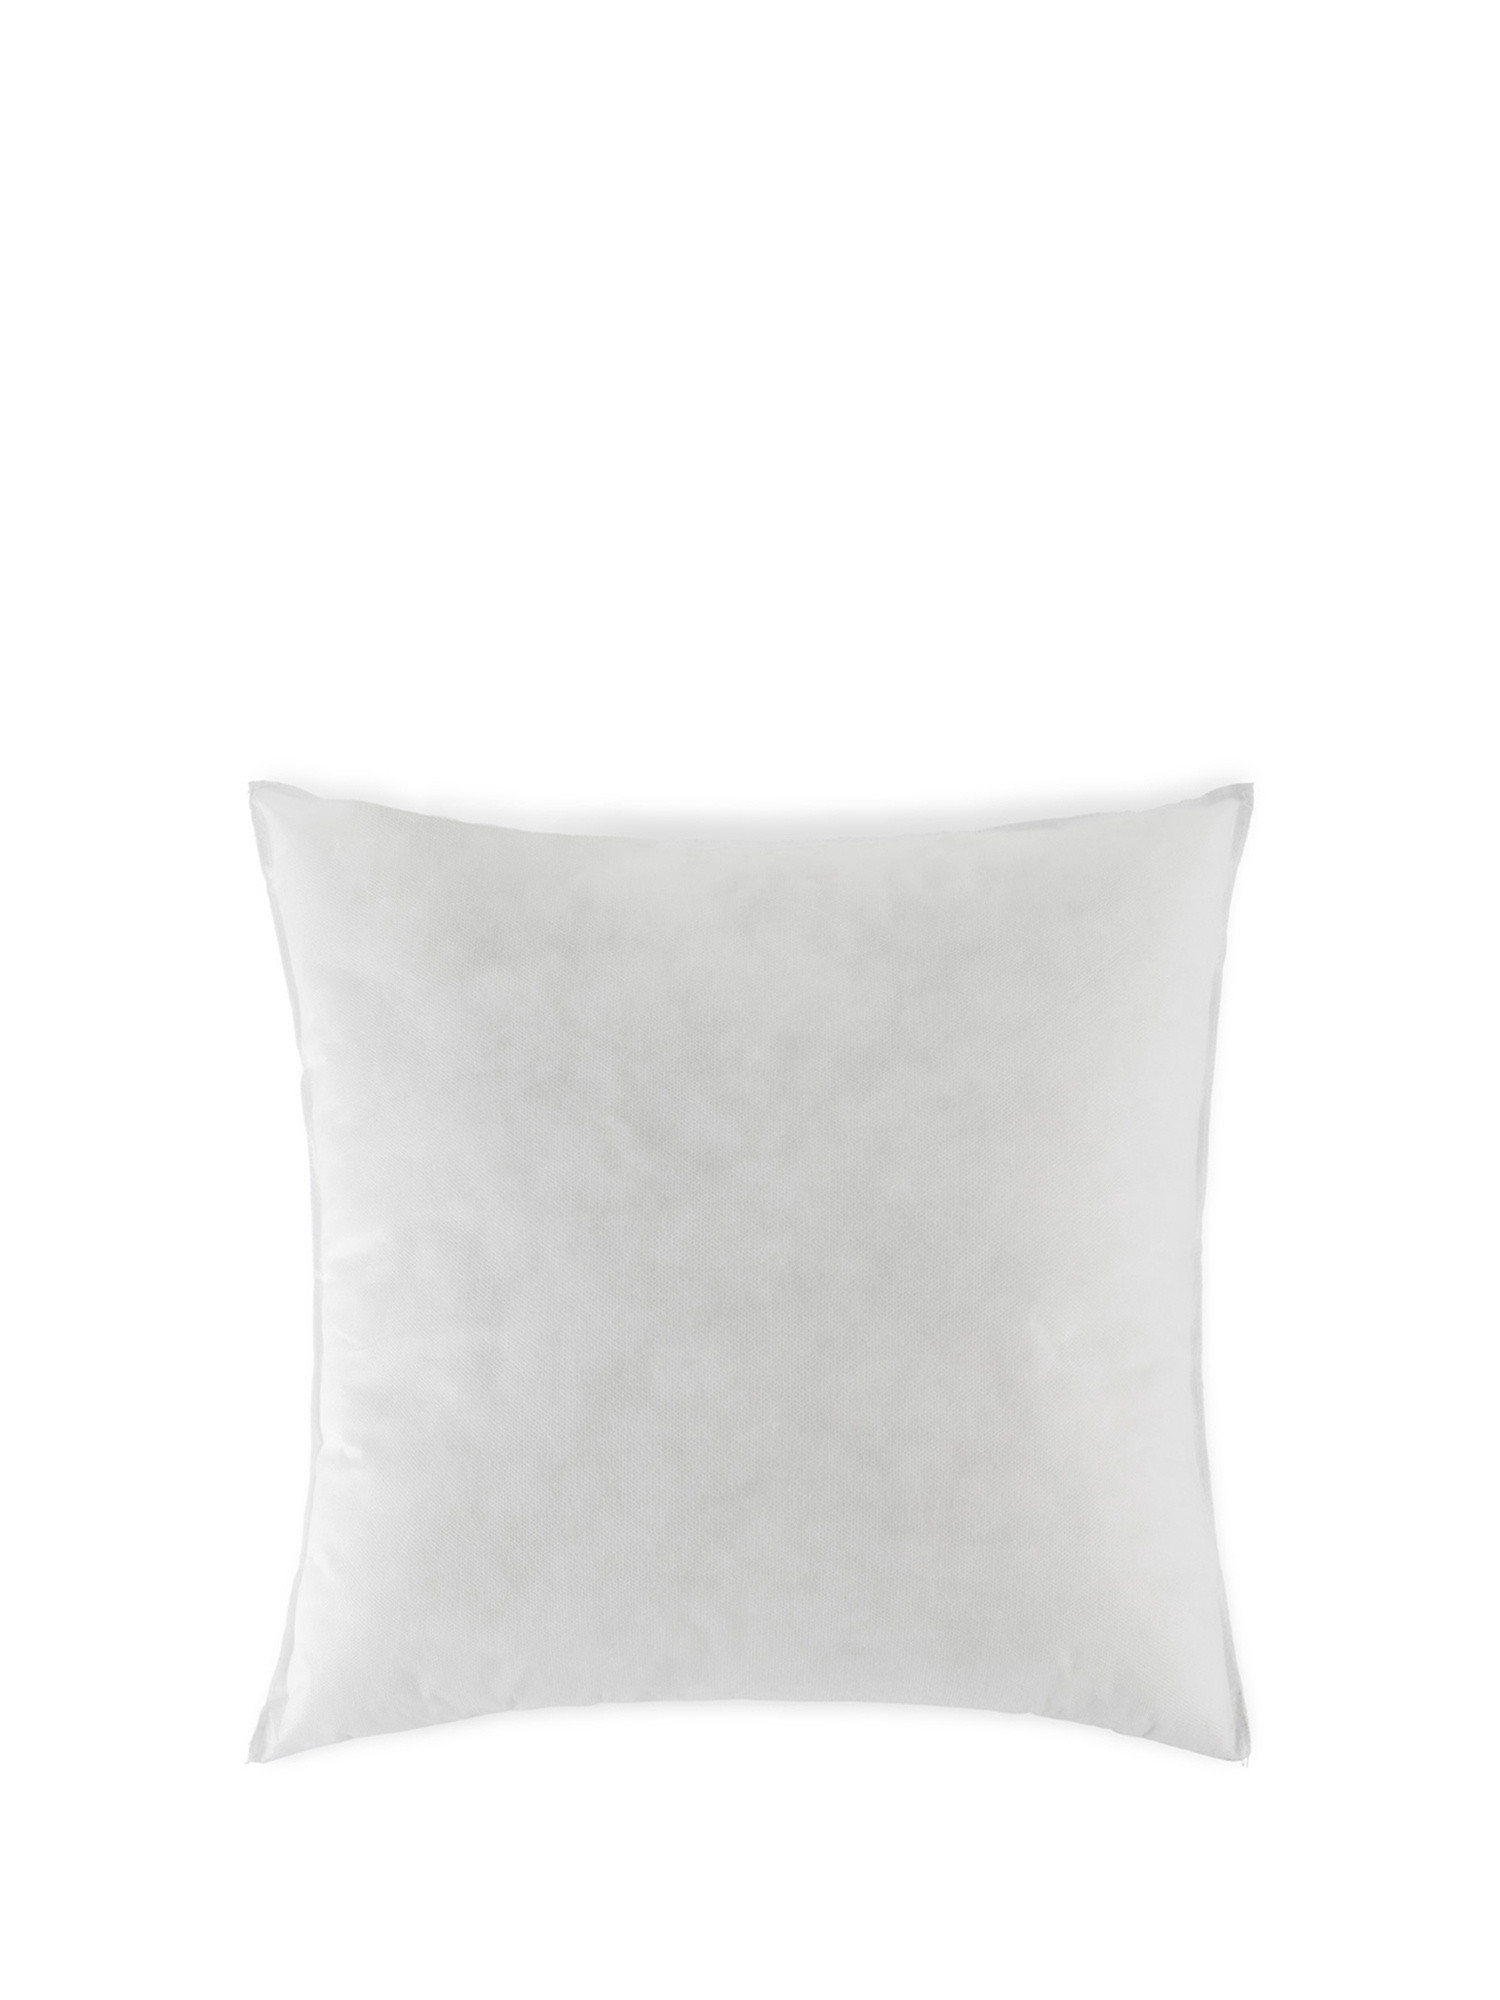 Cushion padding 55x55cm, White, large image number 0